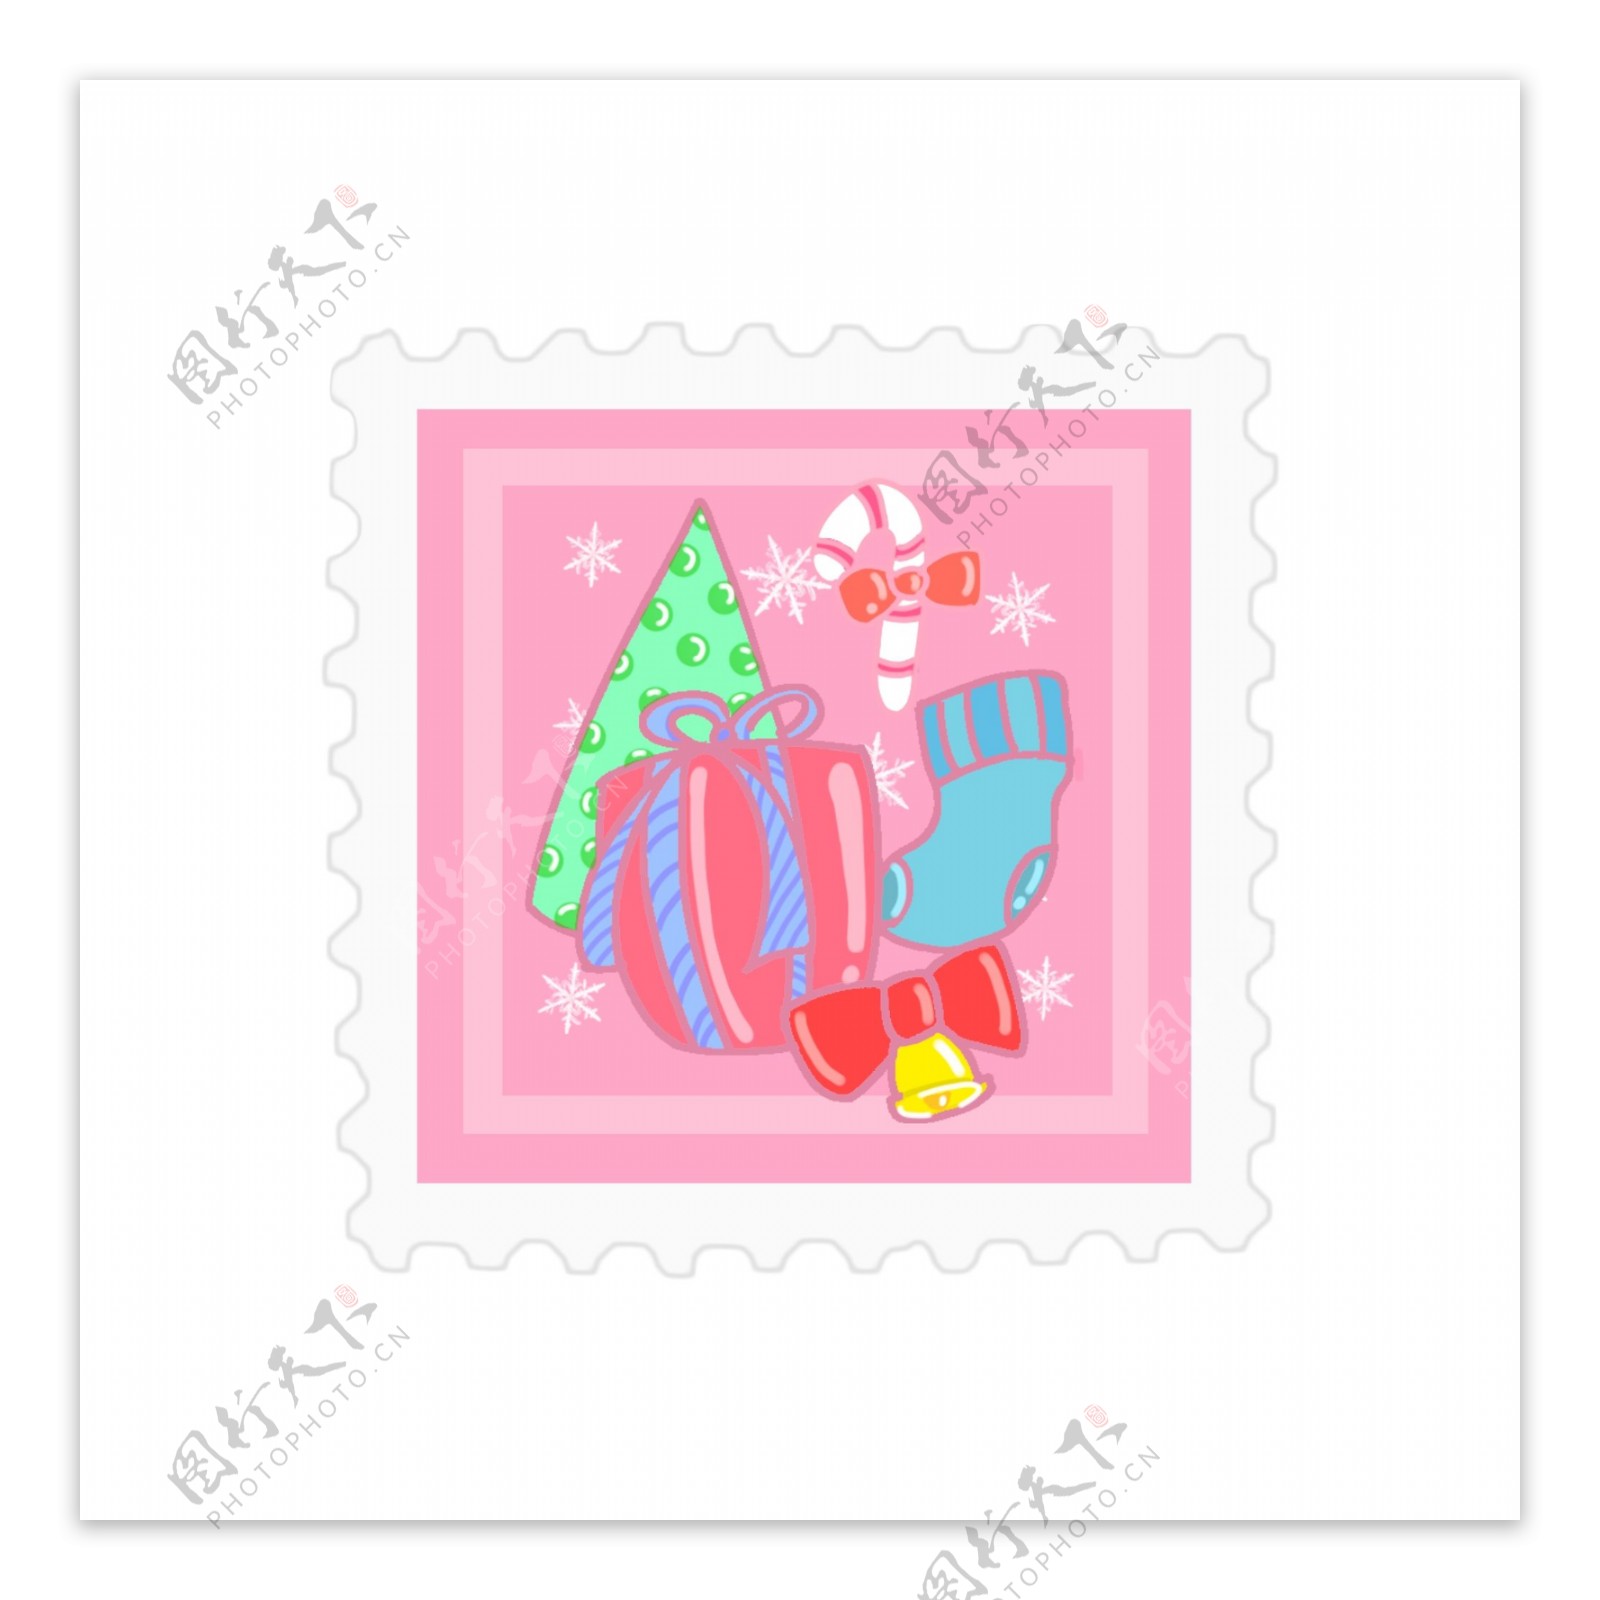 原创圣诞邮票贴纸粉红可爱元素